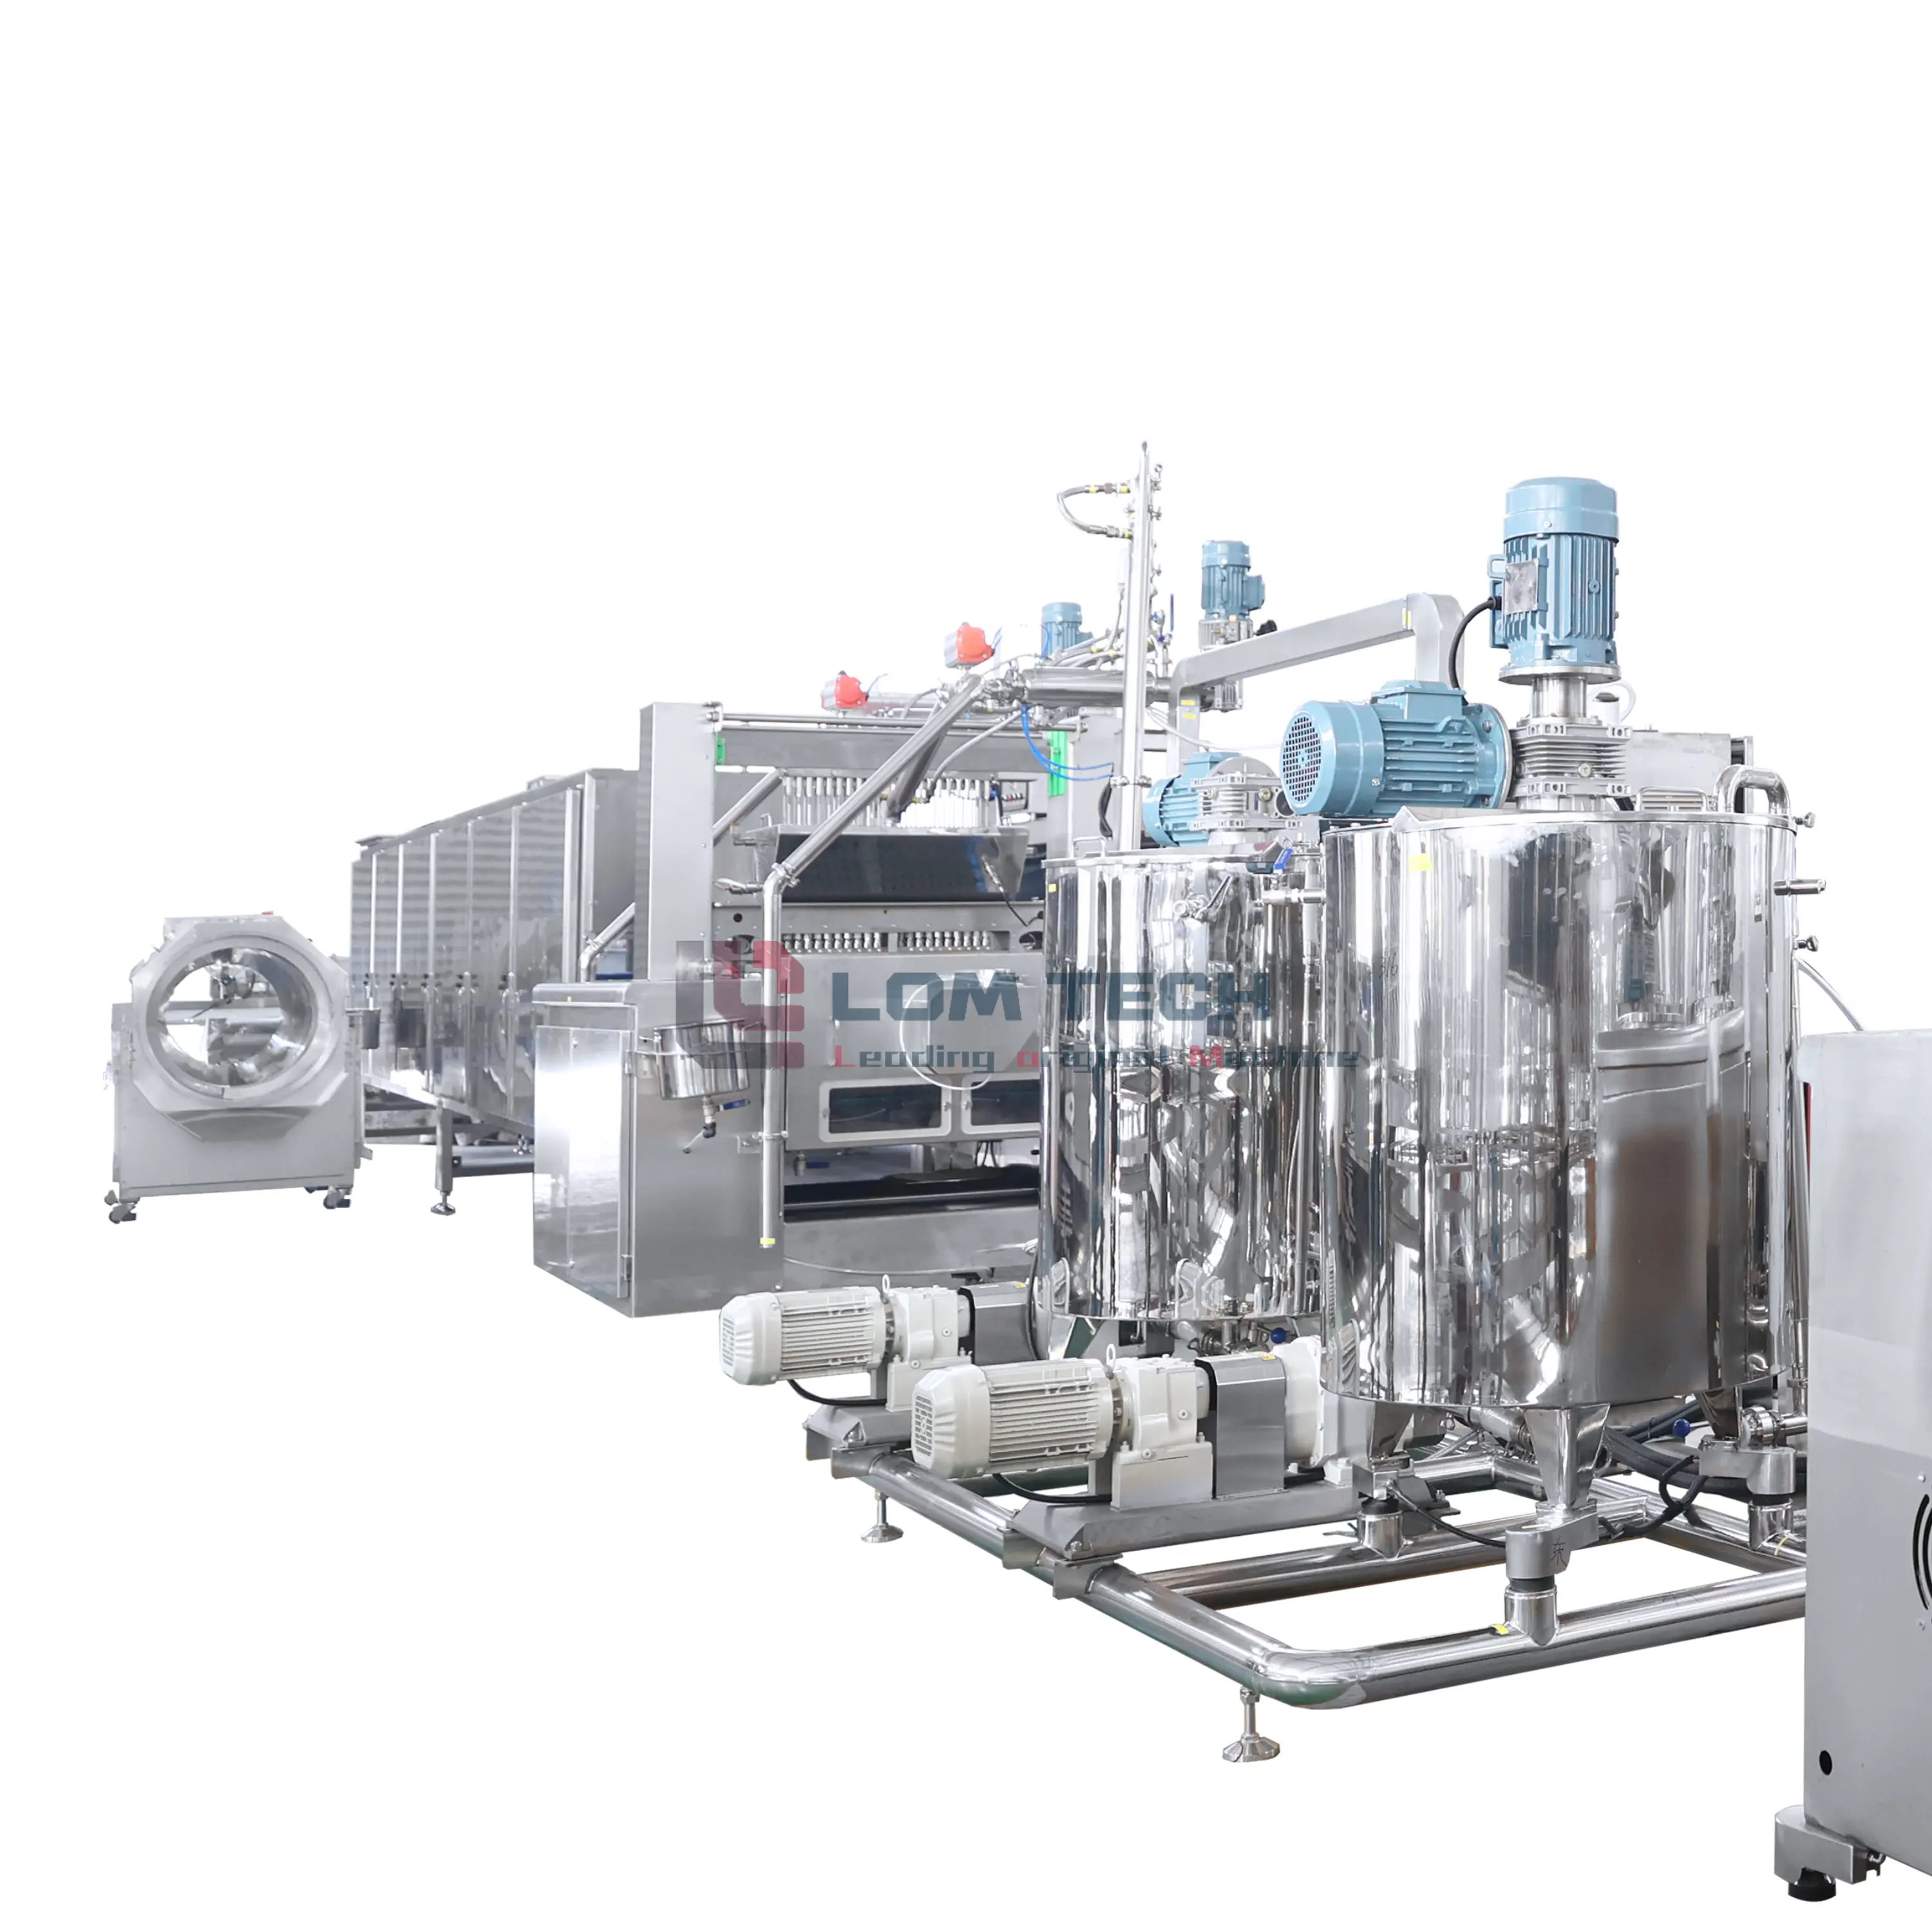 LOM Real Factory máquina de goma de urso 3D de alta qualidade 150kg/h e 300kg/h linha de fabricação de doces com longa história